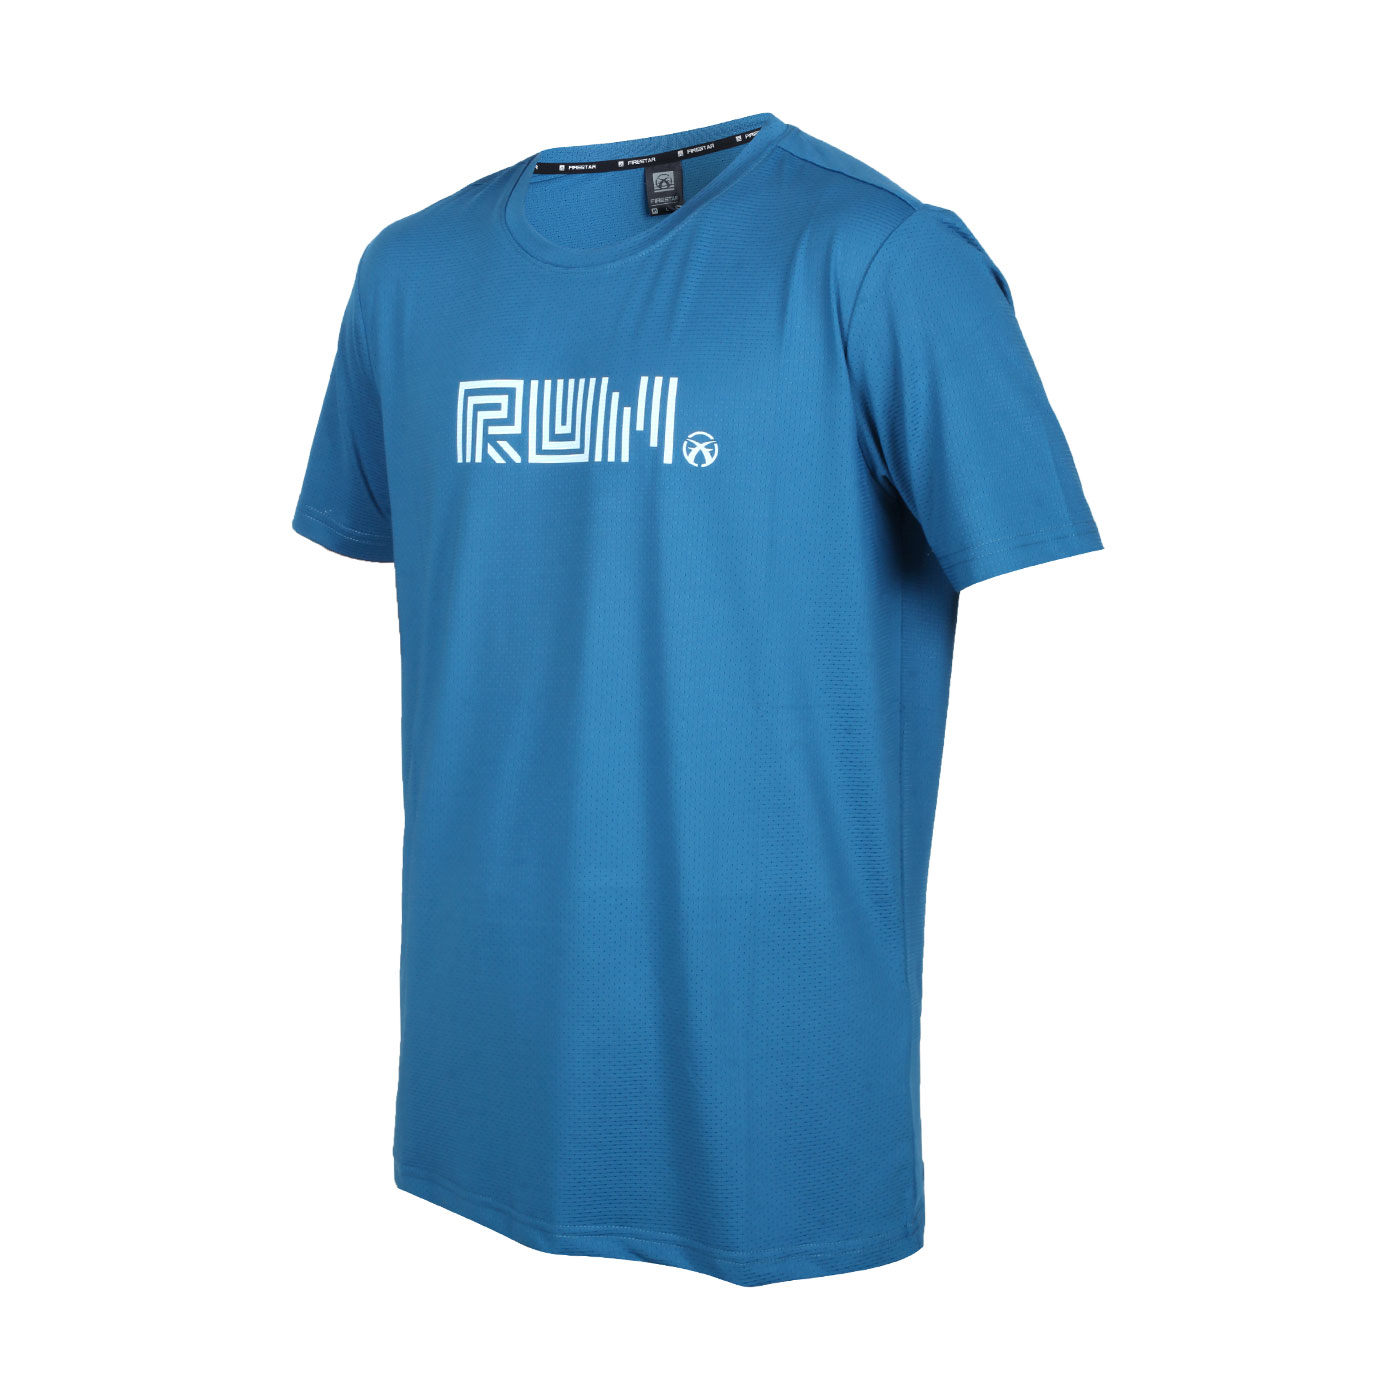 FIRESTAR 男款彈性印花短袖T恤 D2037-98 - 藍水藍白